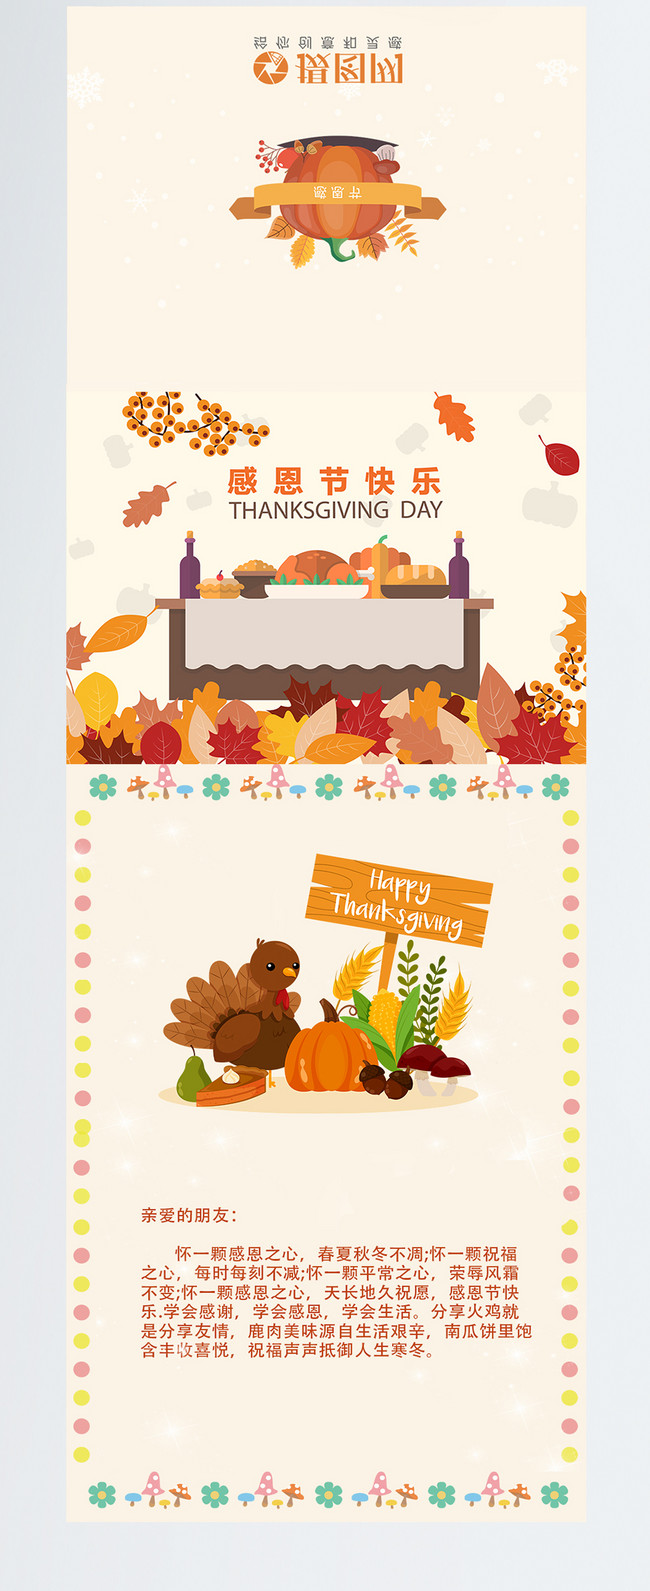 День благодарения открытка. Фон с - клипарт в векторном формате